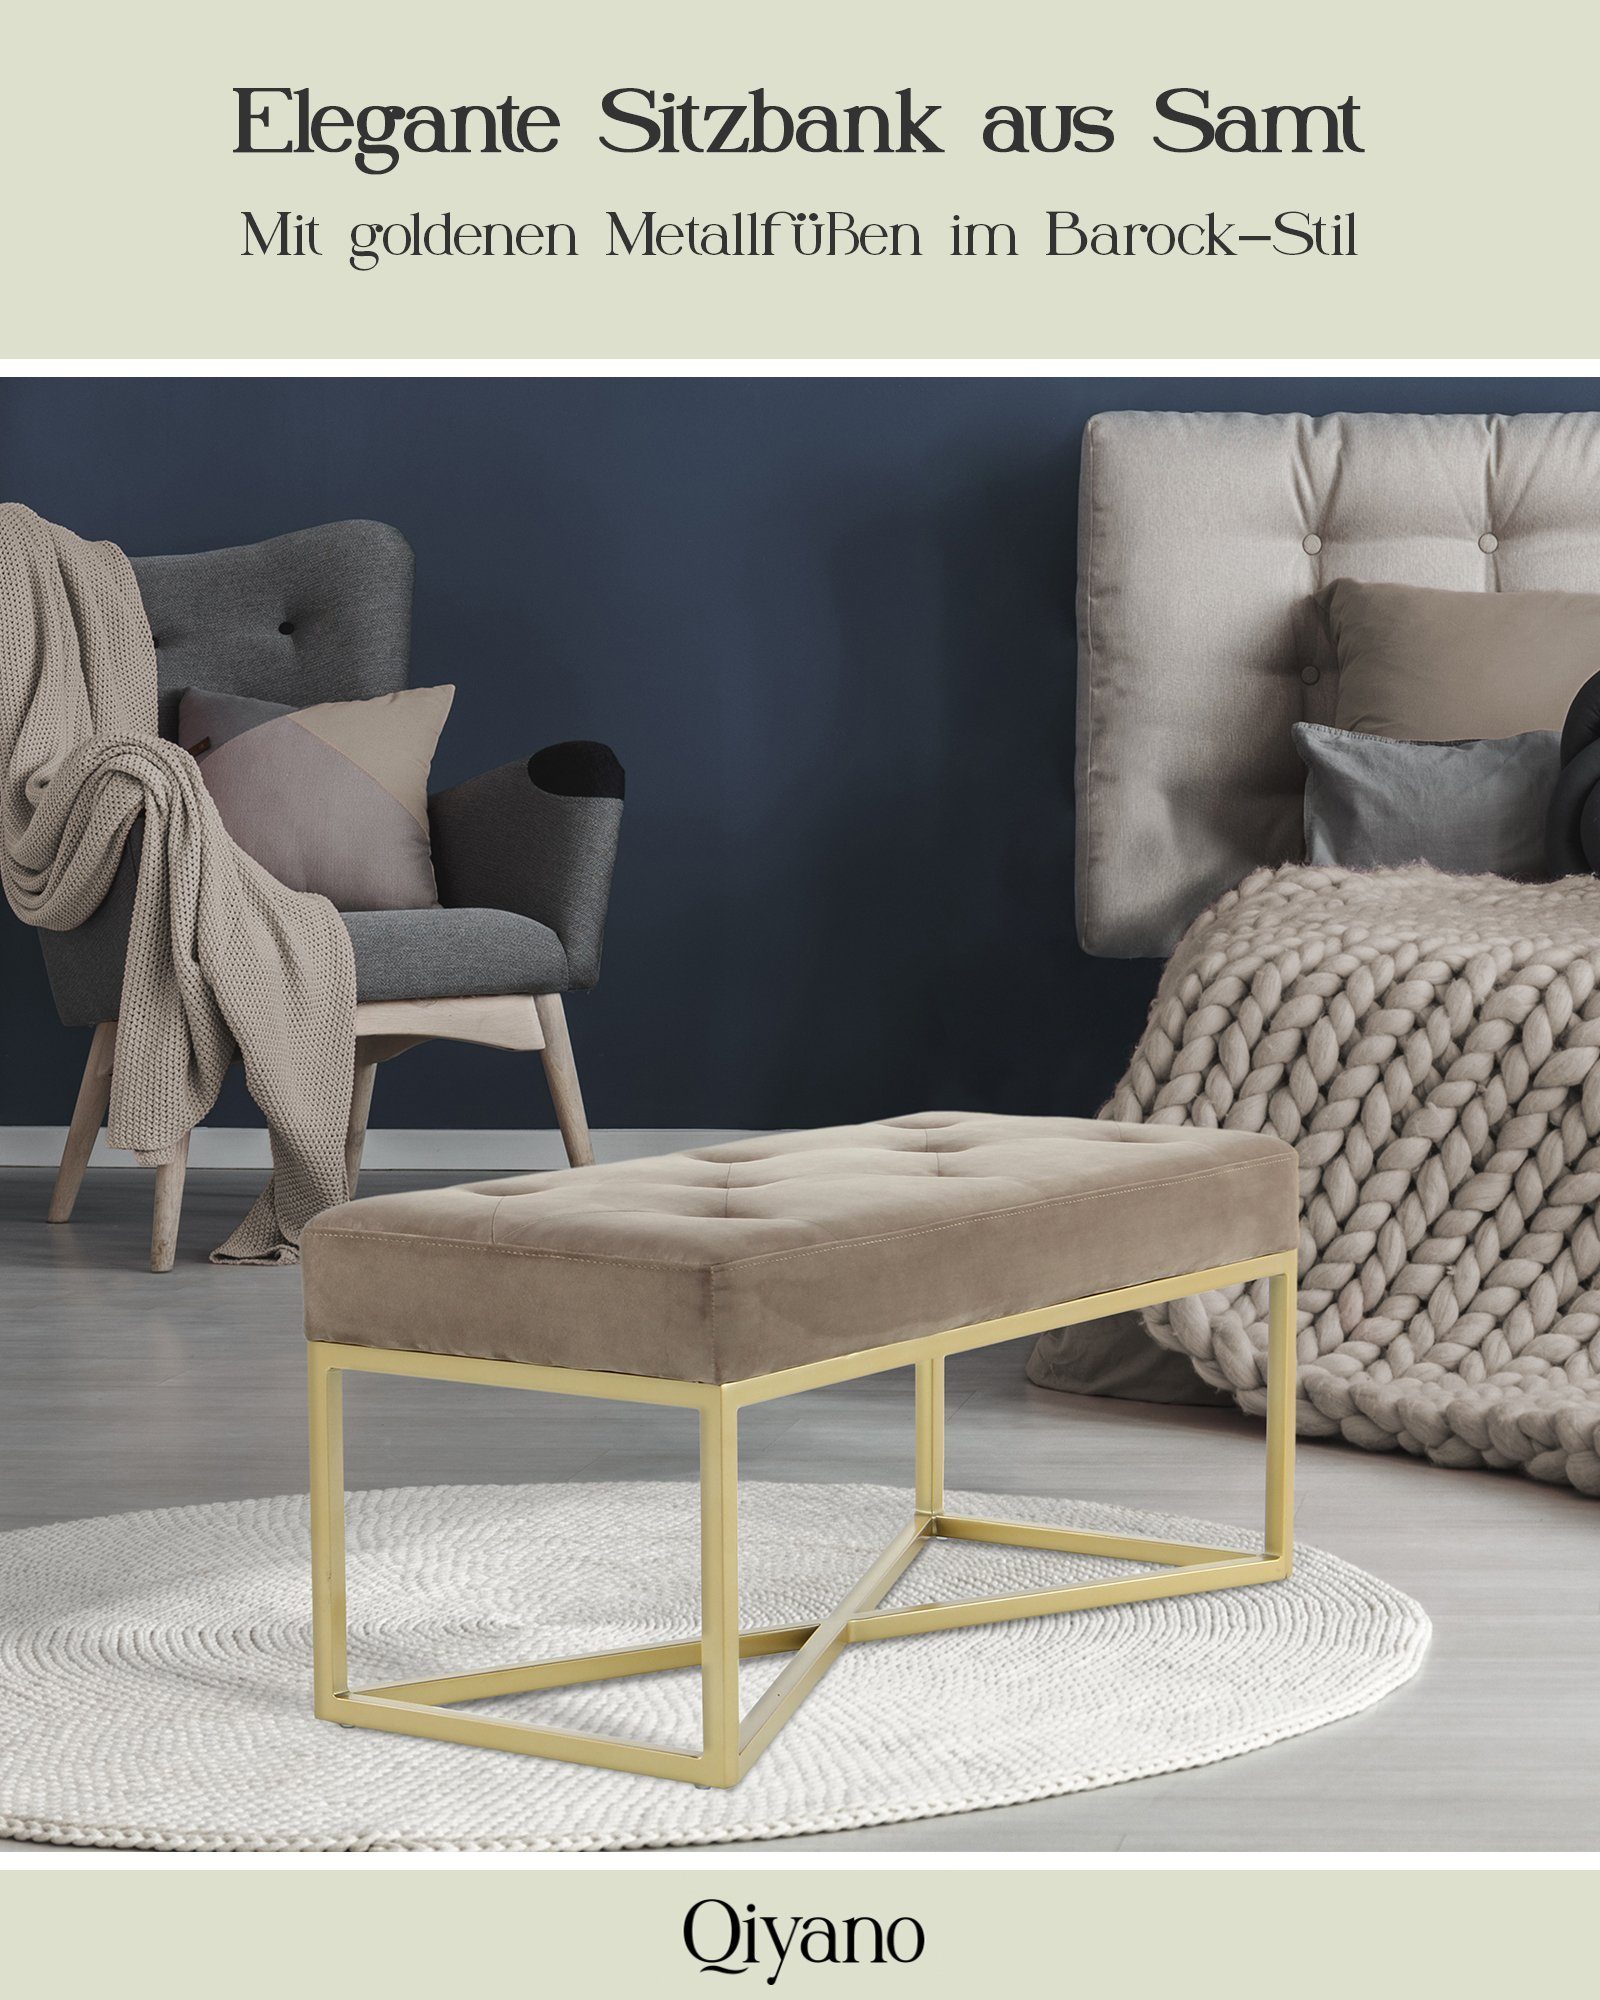 Qiyano mit goldenen Barock-Stil Sitzbank Gesteppte Polsterbank Metallfüßen Taupe Sitz- Samt